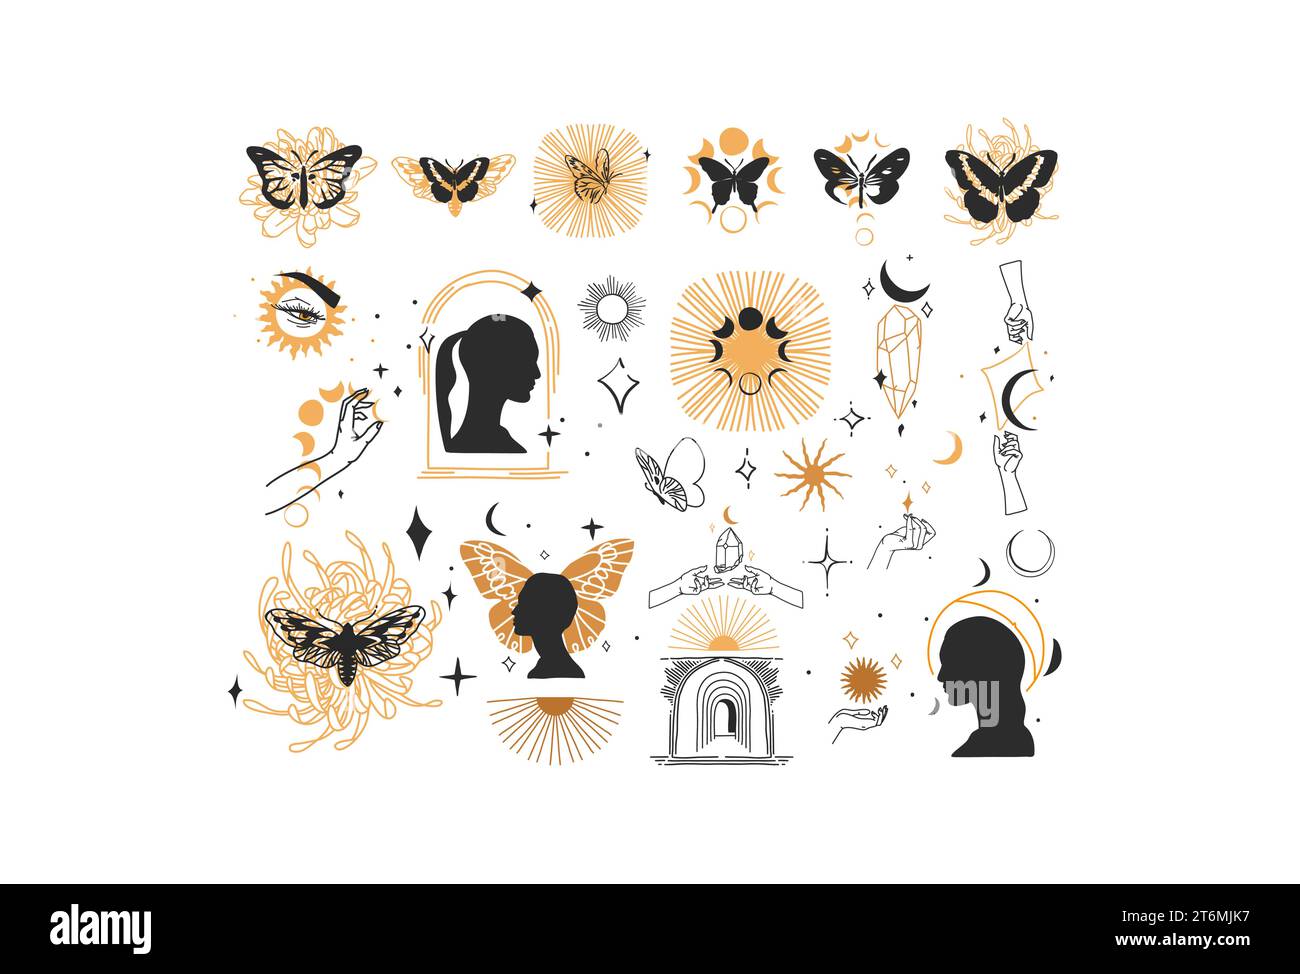 Ensemble de collection d'éléments d'illustration de ligne graphique abstraite de vecteur dessiné à la main, croissant magique, papillon, fleurs, papillon, lune et mains humaines isolées Illustration de Vecteur